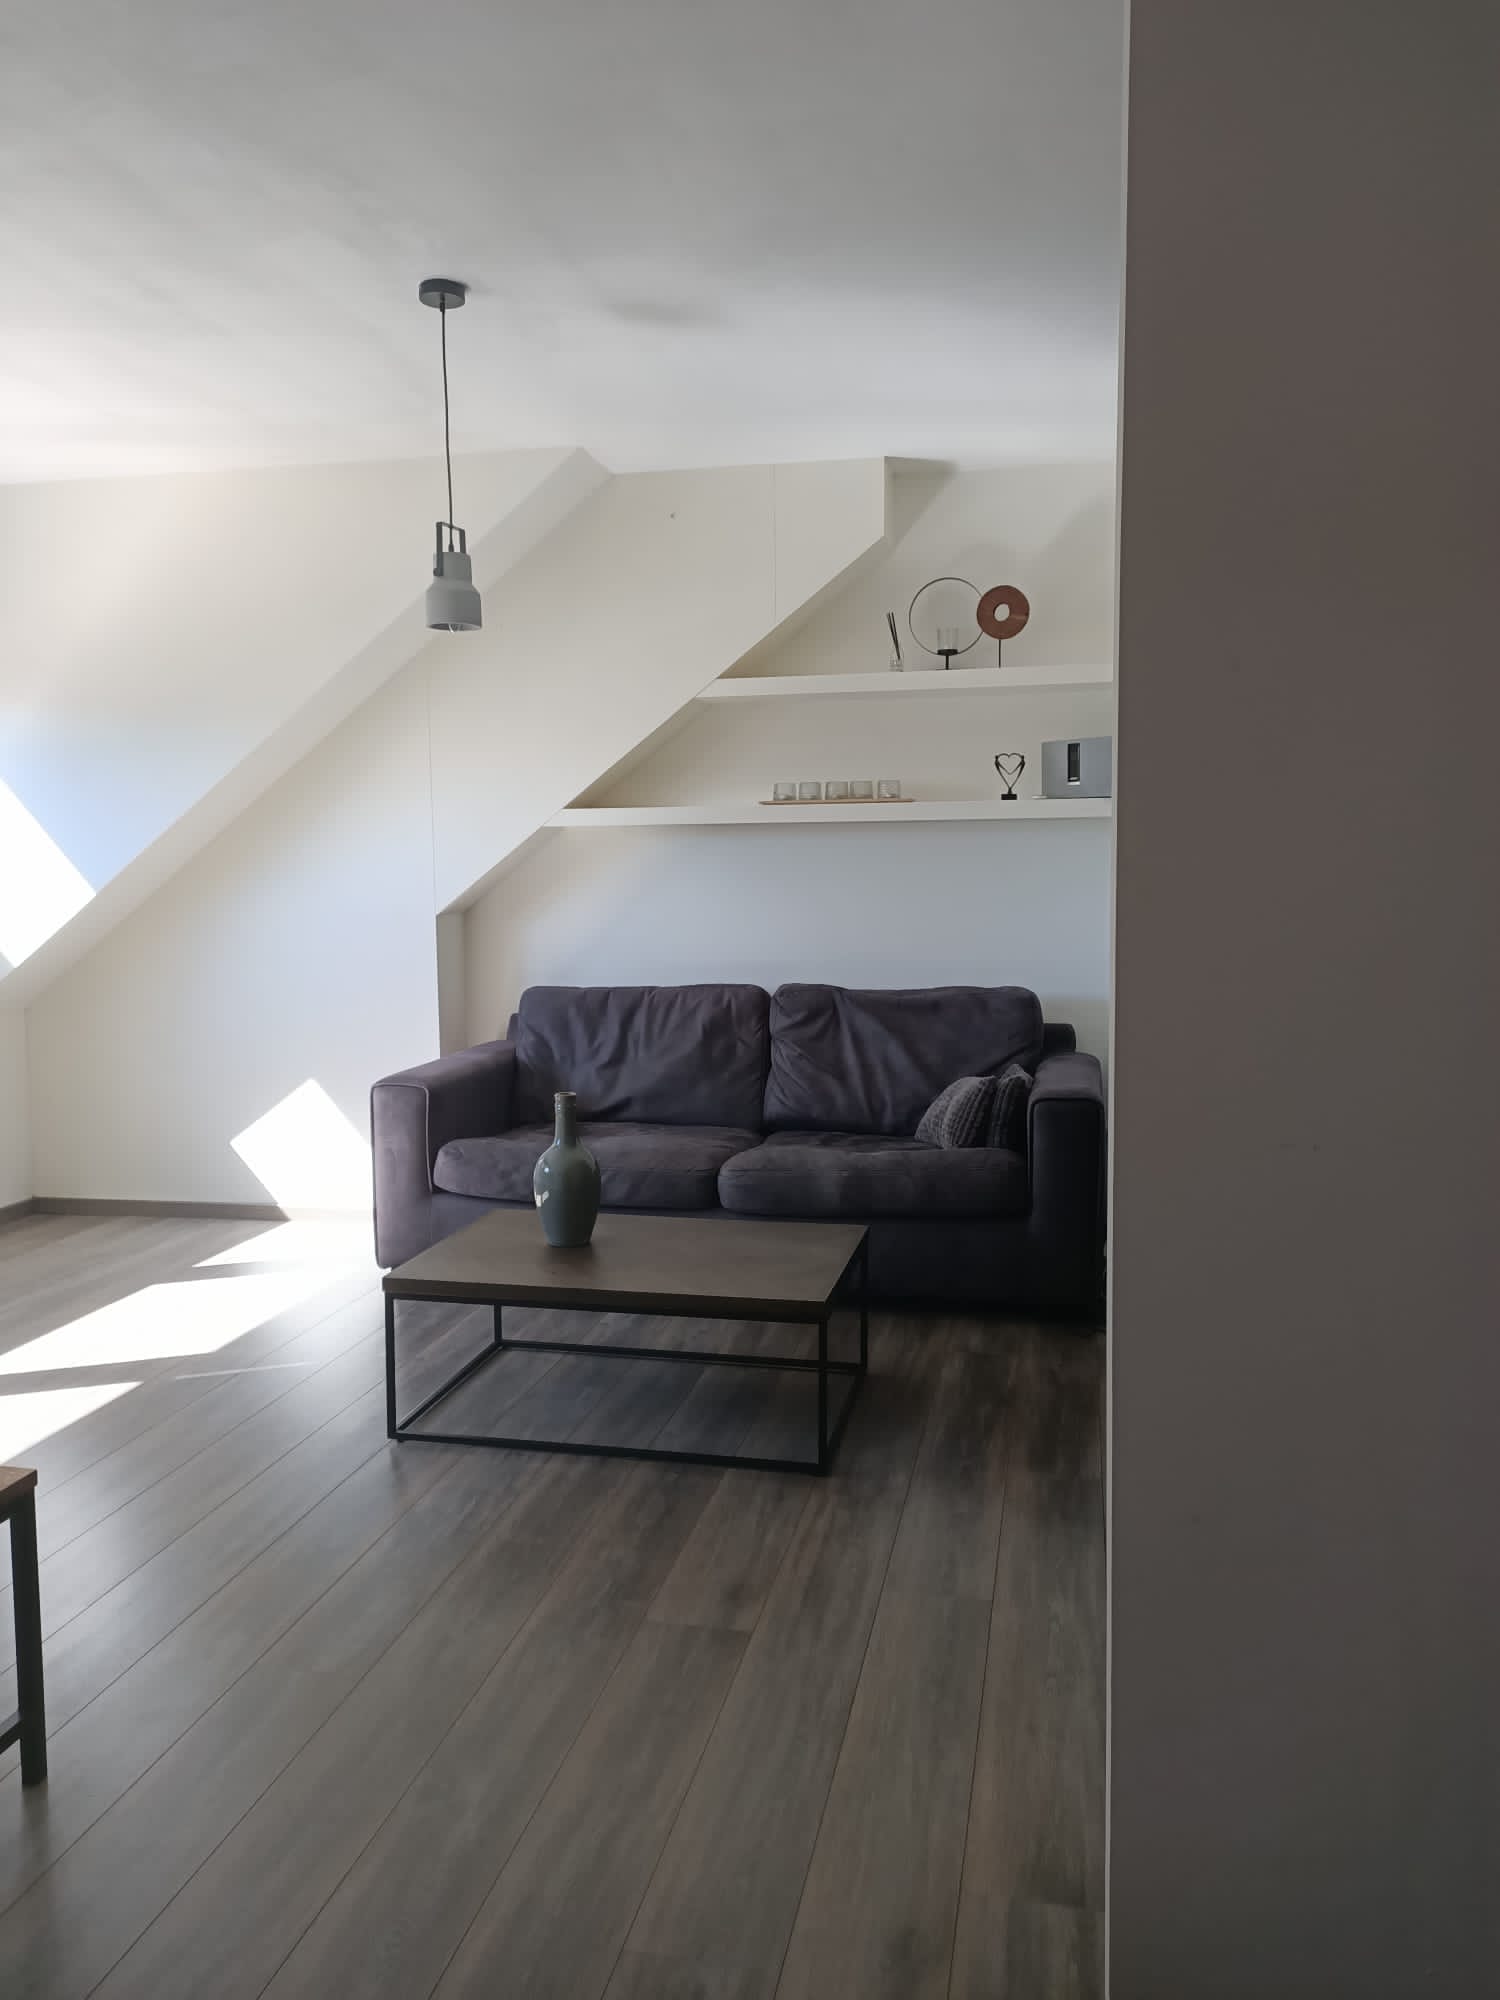 Bekijk for 1/13 van apartment in Roermond